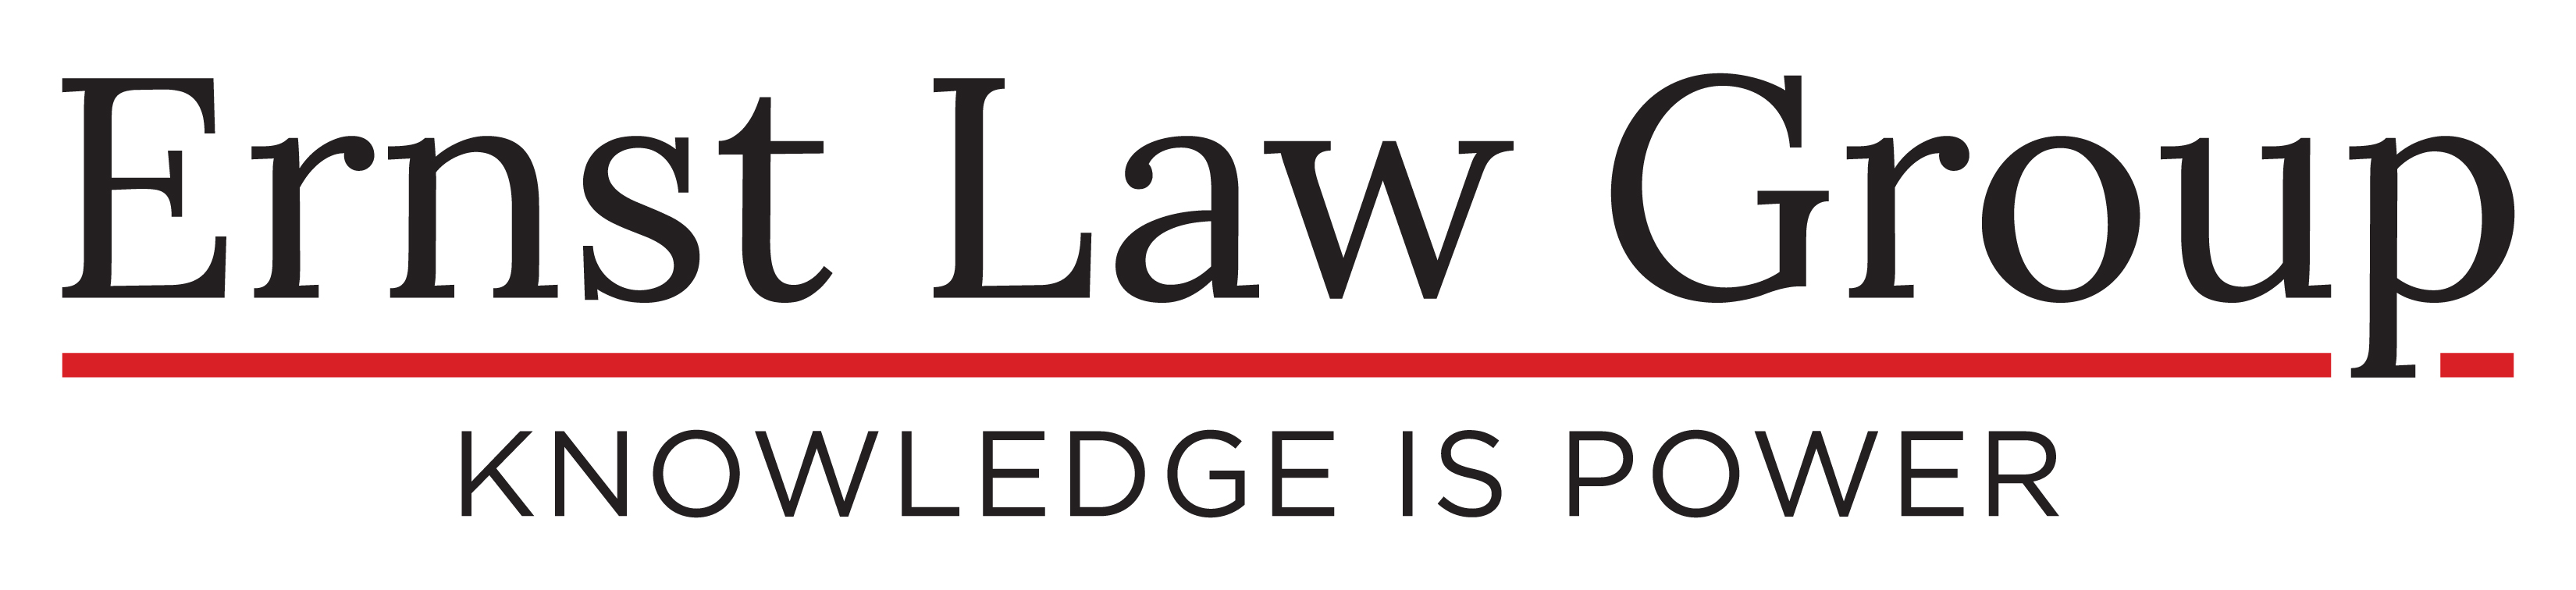 Ernst law group